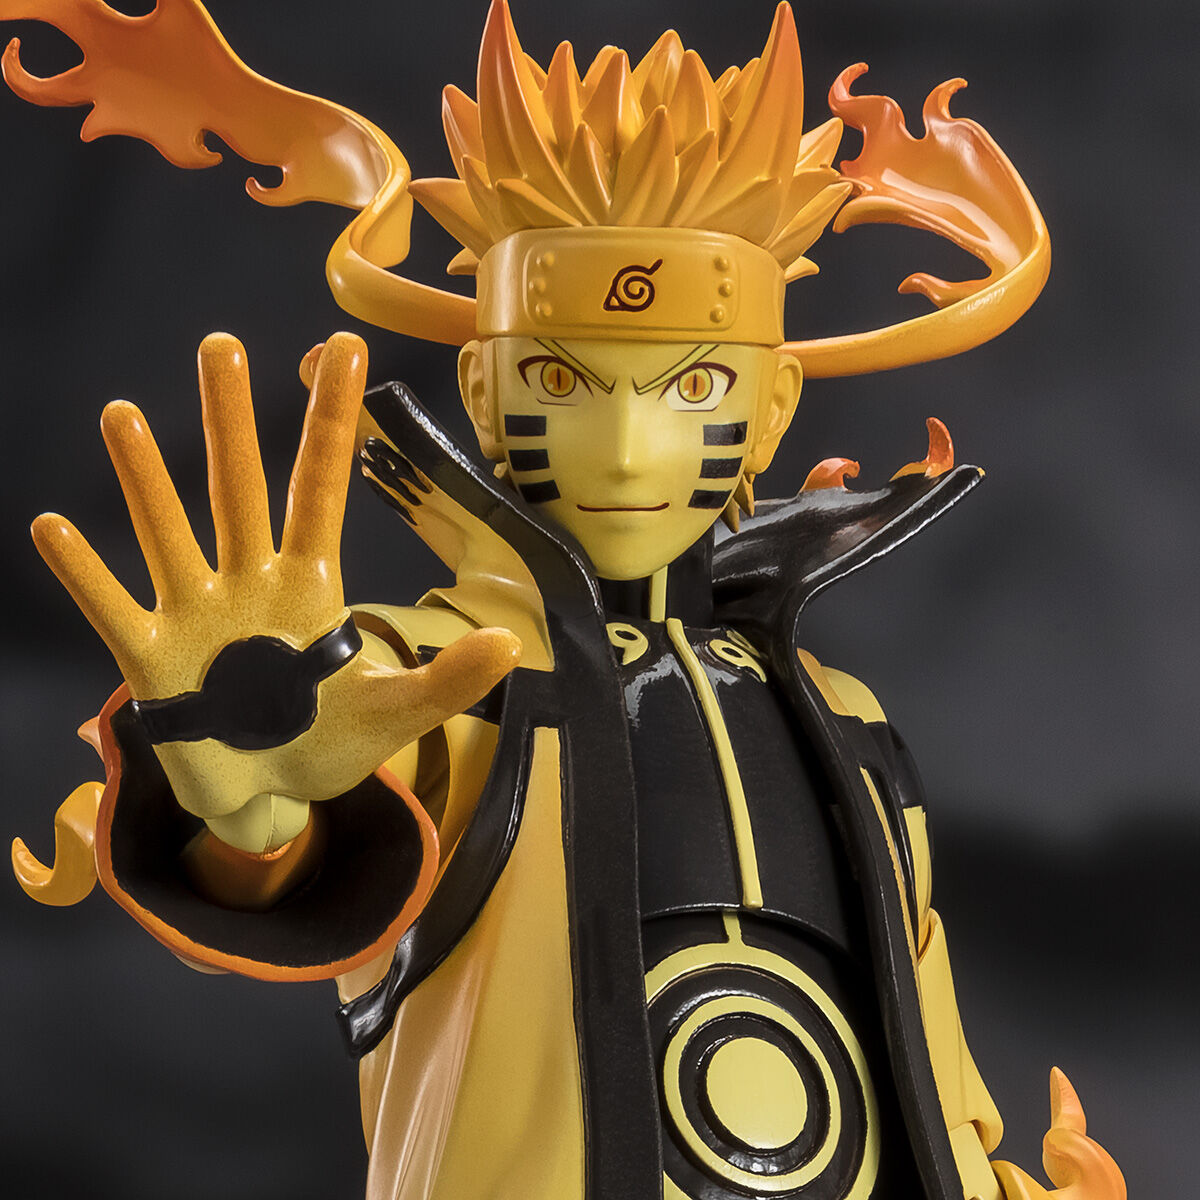 Naruto Uzumaki The Fourth Shinobi World War Kurama Link Mode S.H.Figuarts Figure PREMIUM BANDAI